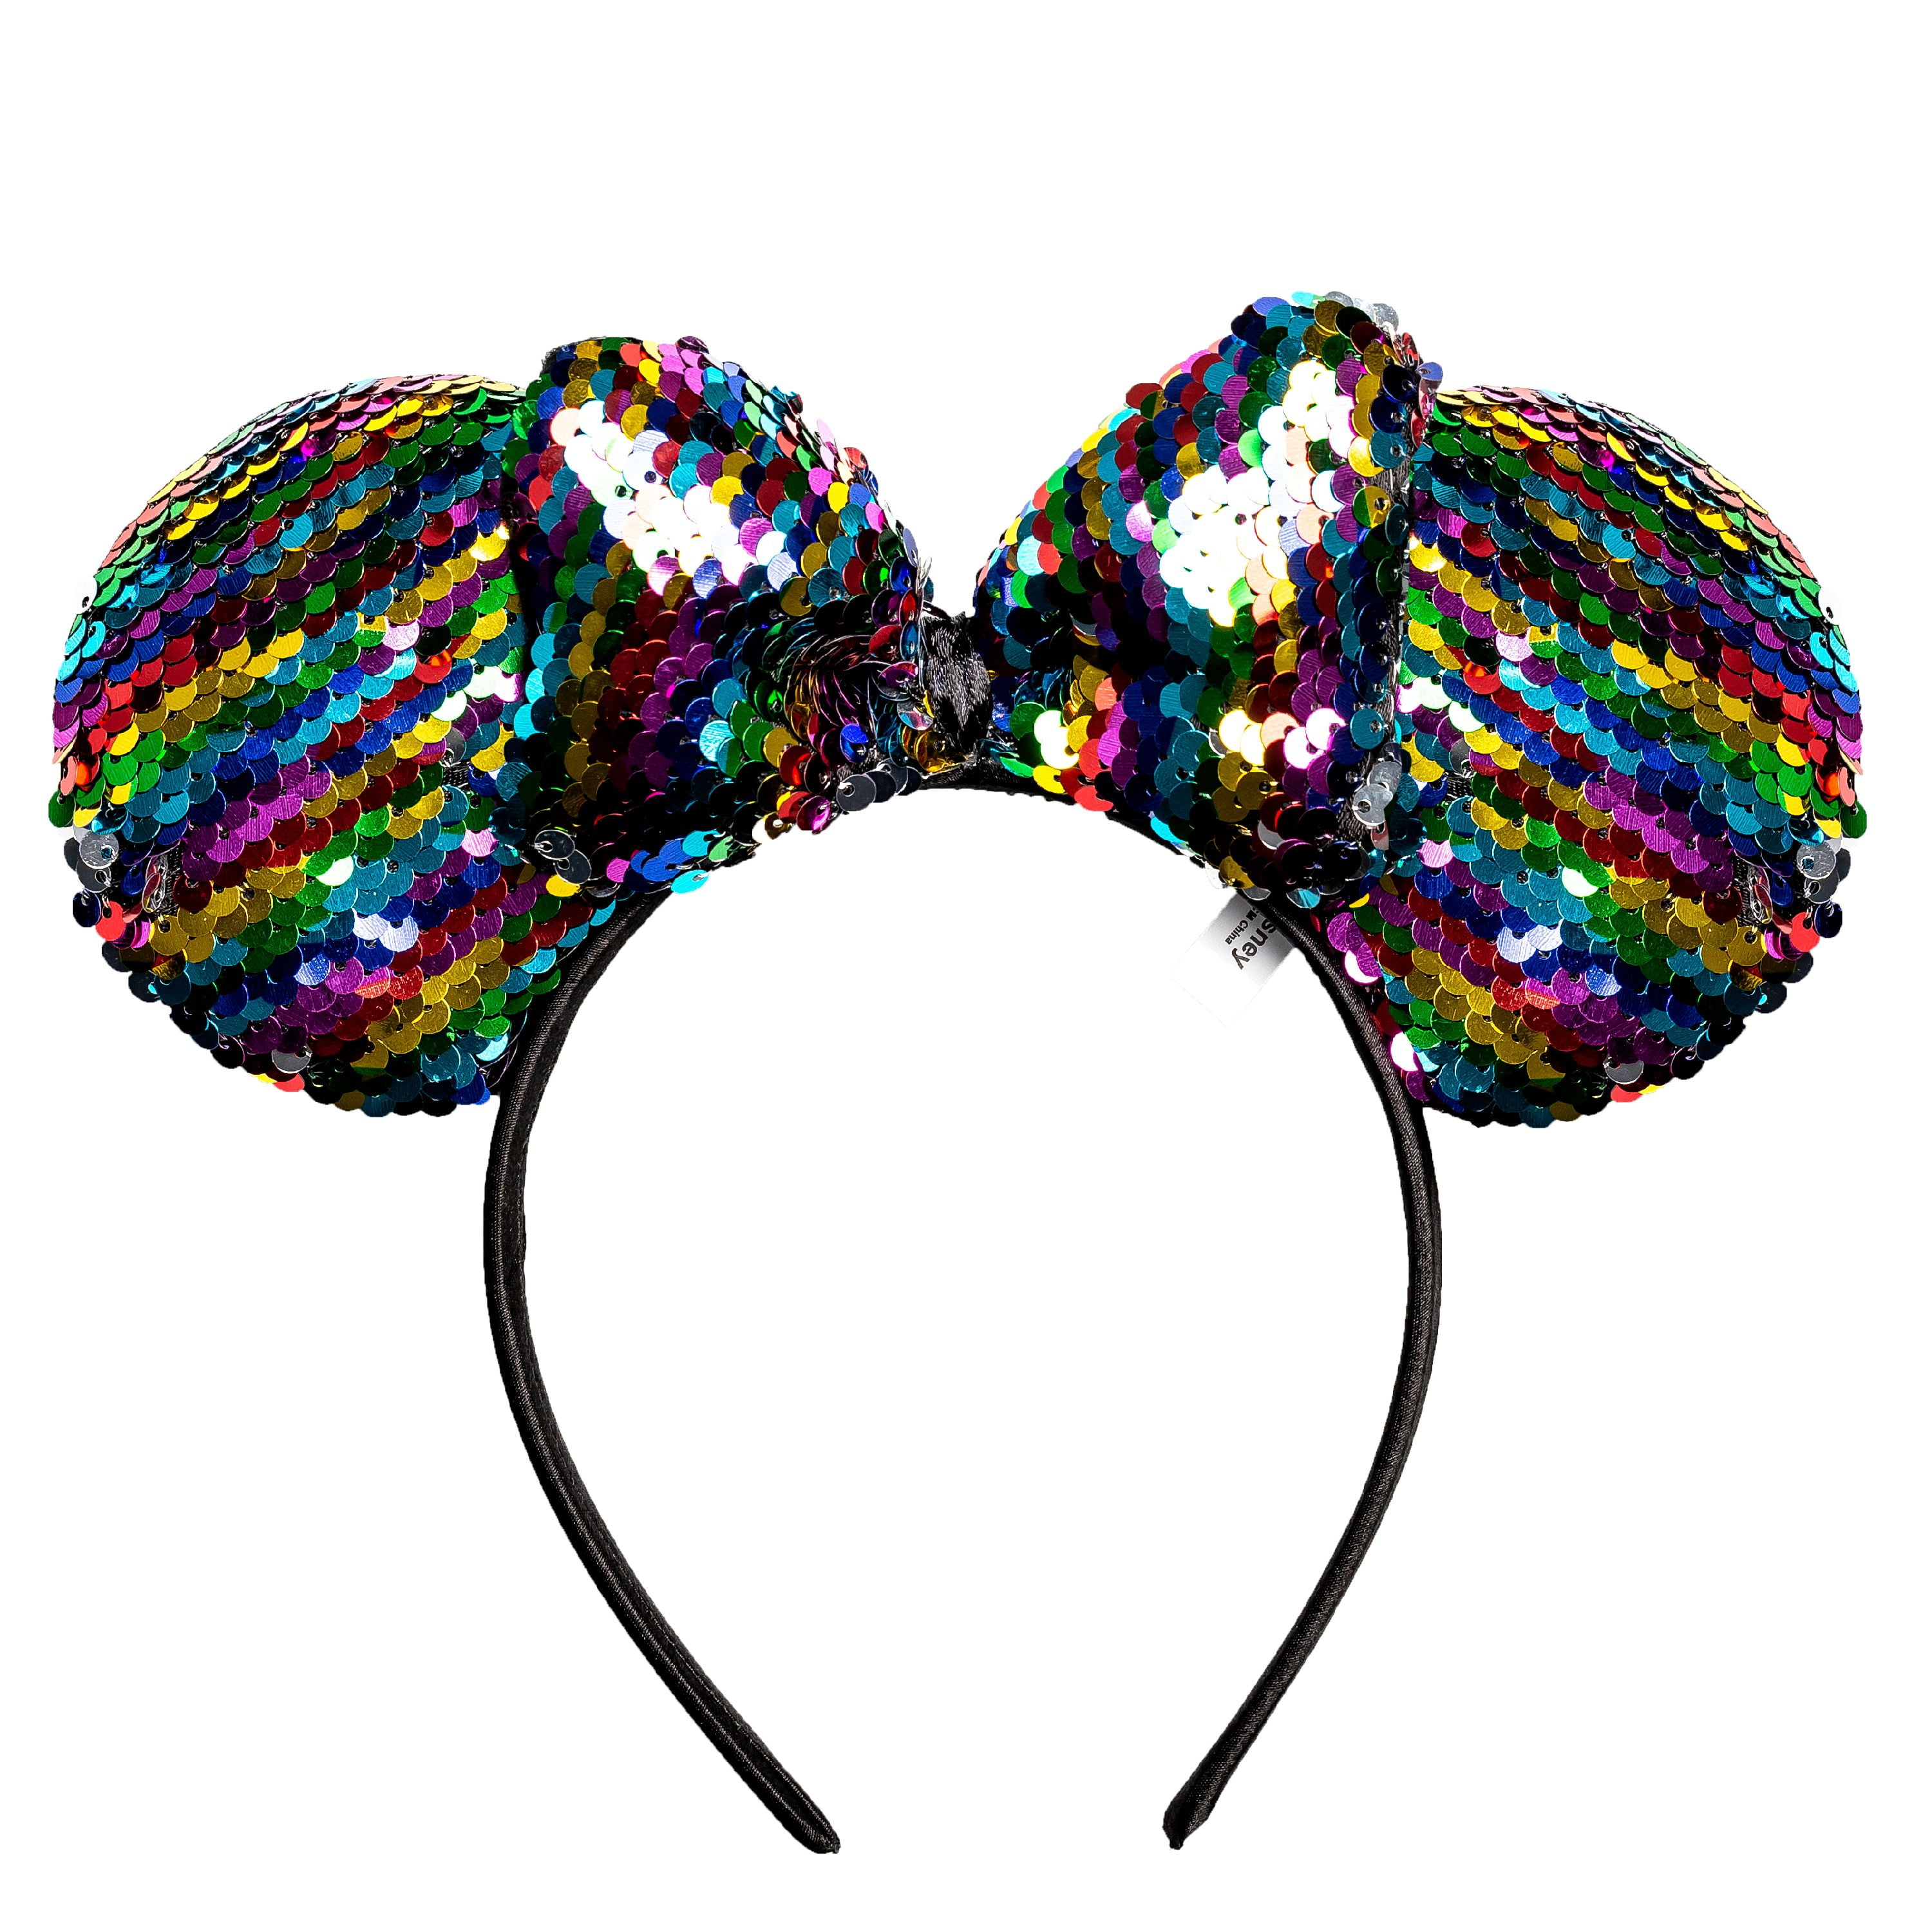 NEW Disney Parks Rainbow Sequin Minnie Mouse Confetti Ears Headband 2020 NWT 